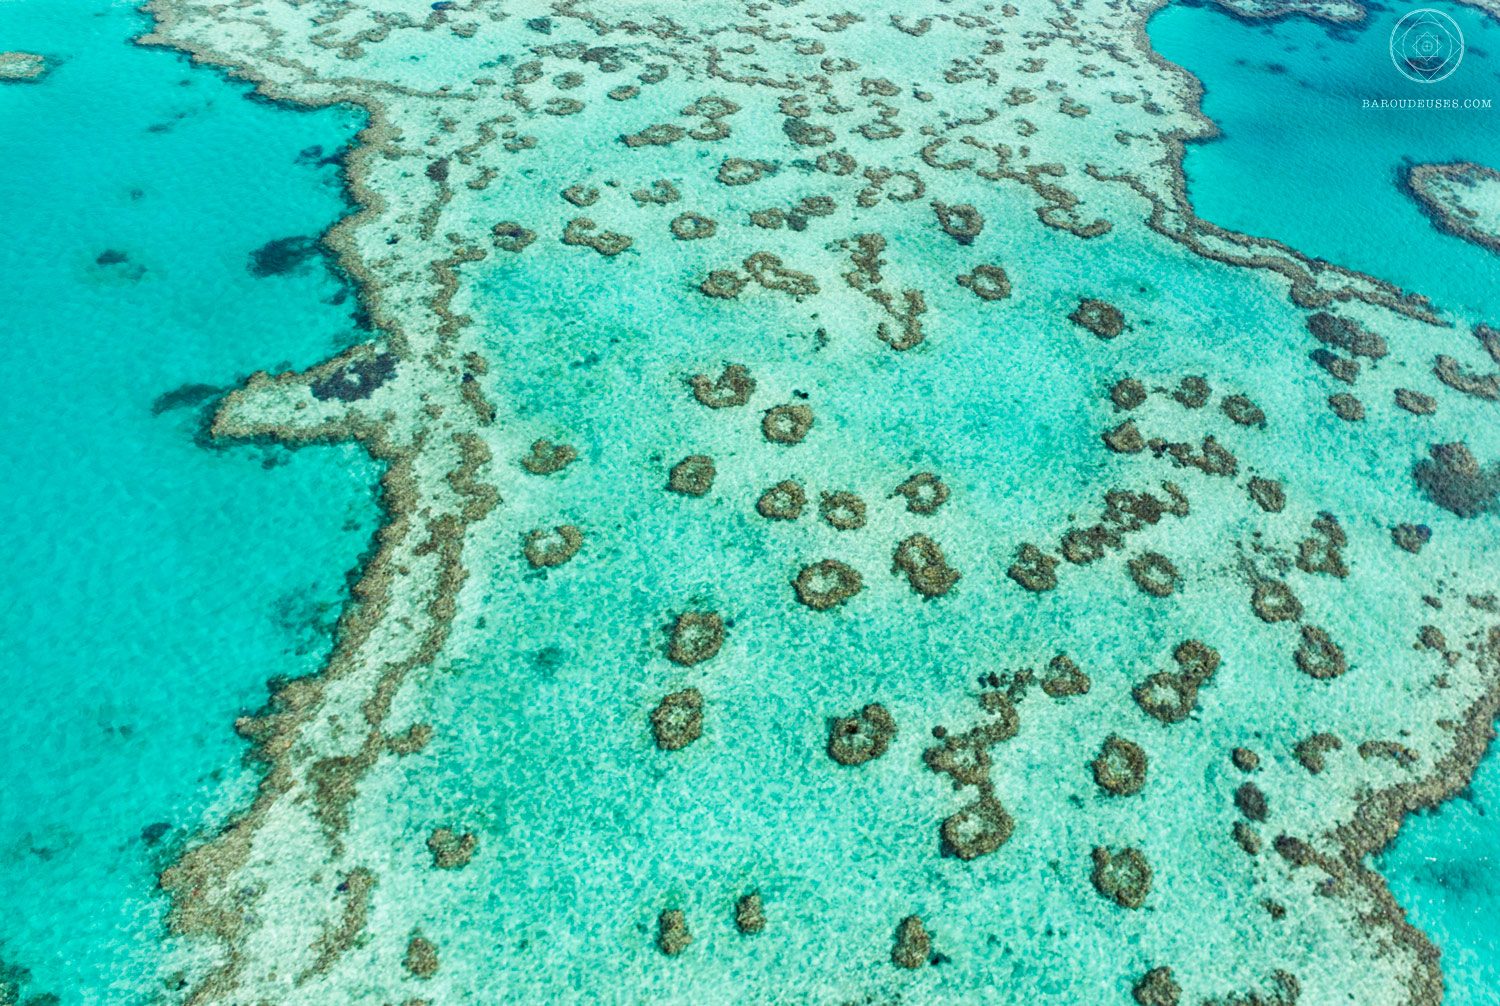 La grande barrière de corail, Australie, vue du ciel